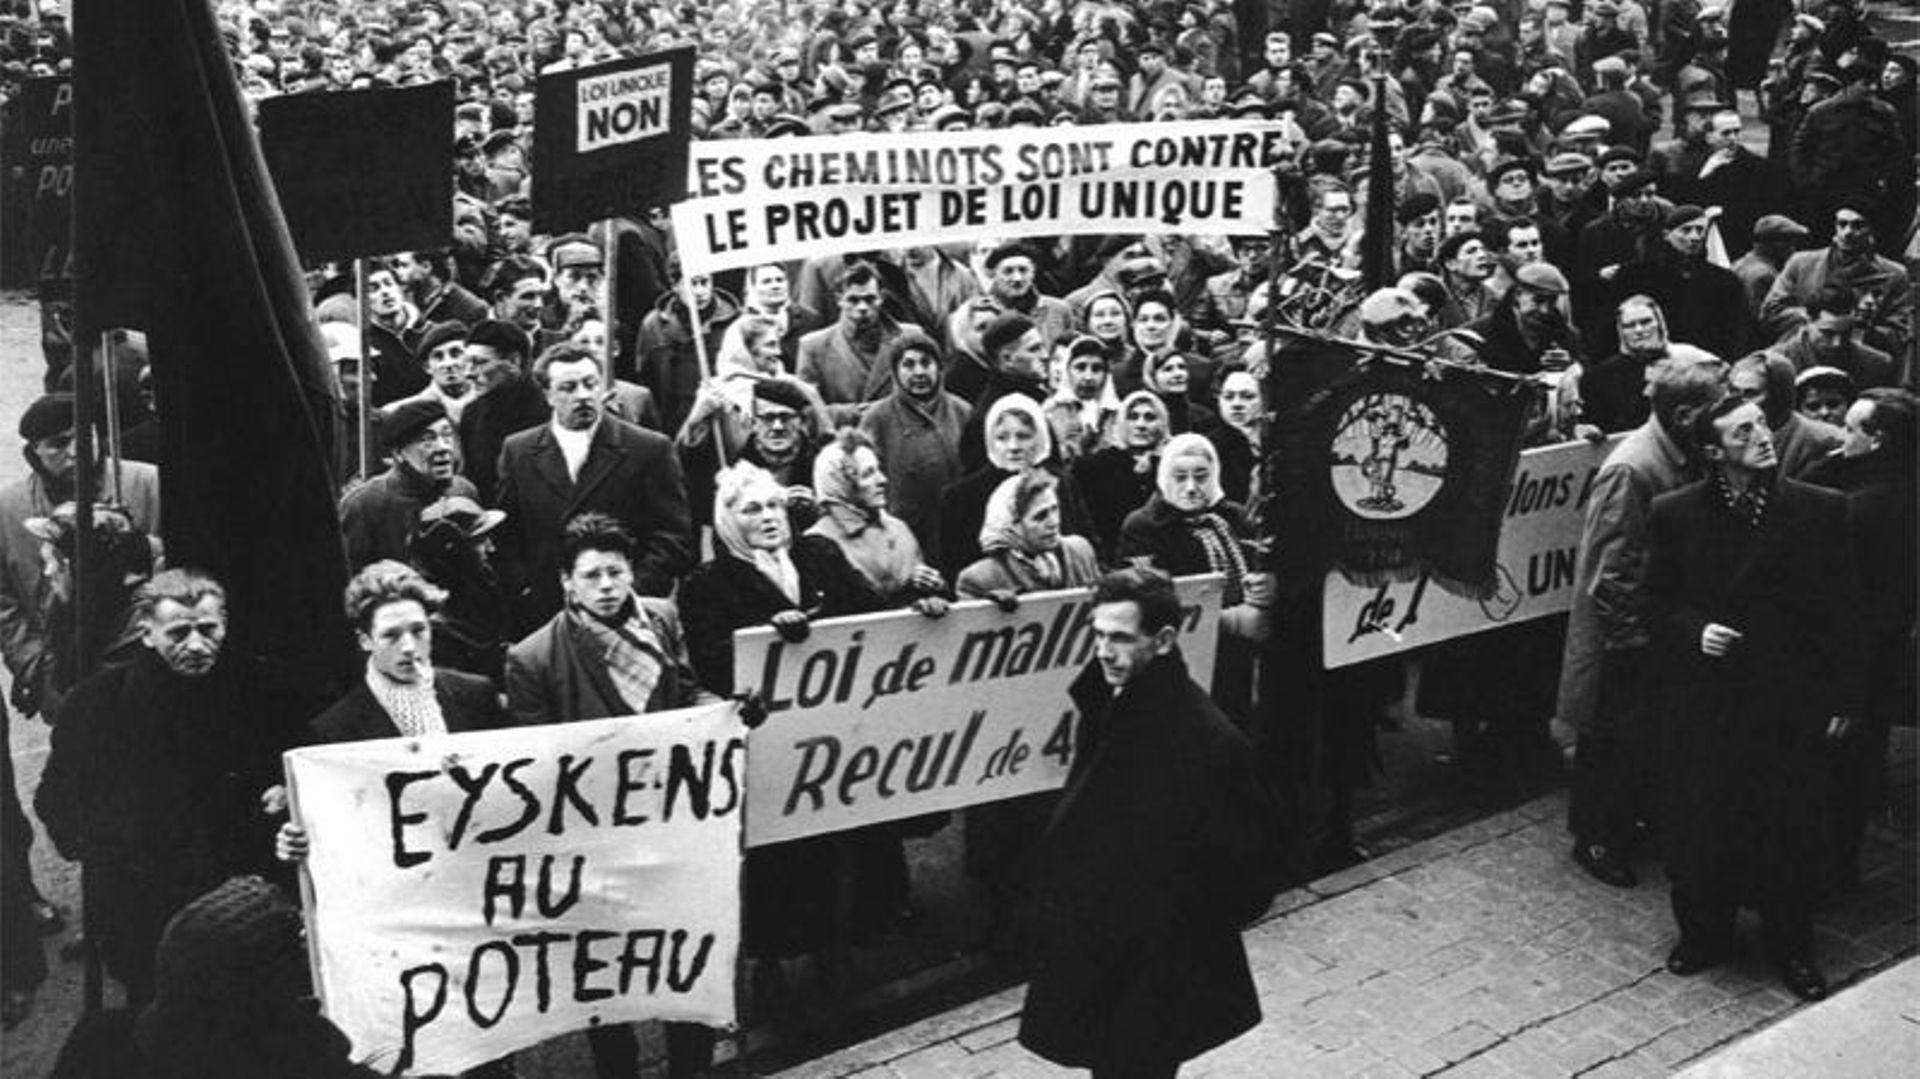 La grève, plus suivie en Wallonie, aura une dimension régionaliste et influencera l'avenir institutionnel du pays